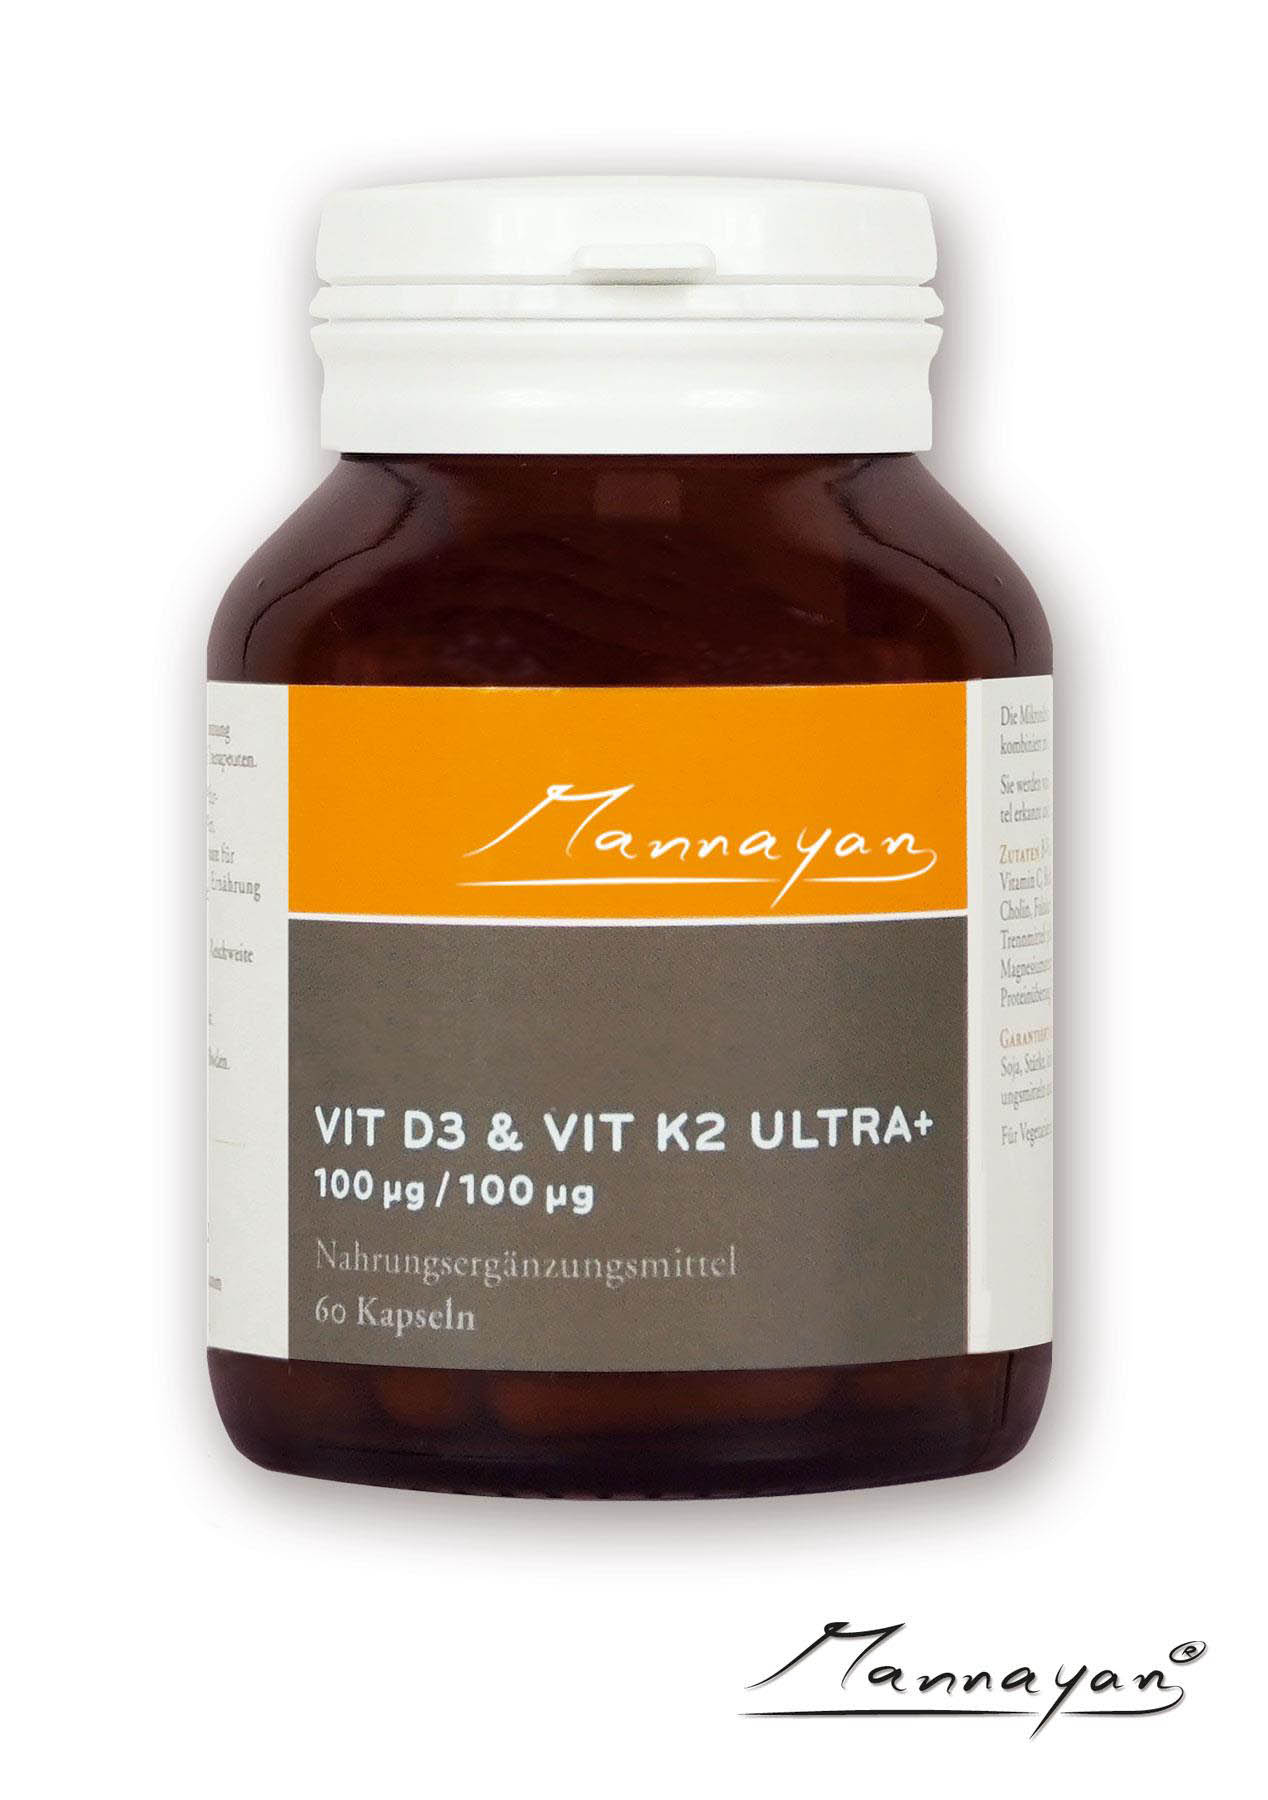 Vitamin D3 & K3 Ultra+ von Mannayan